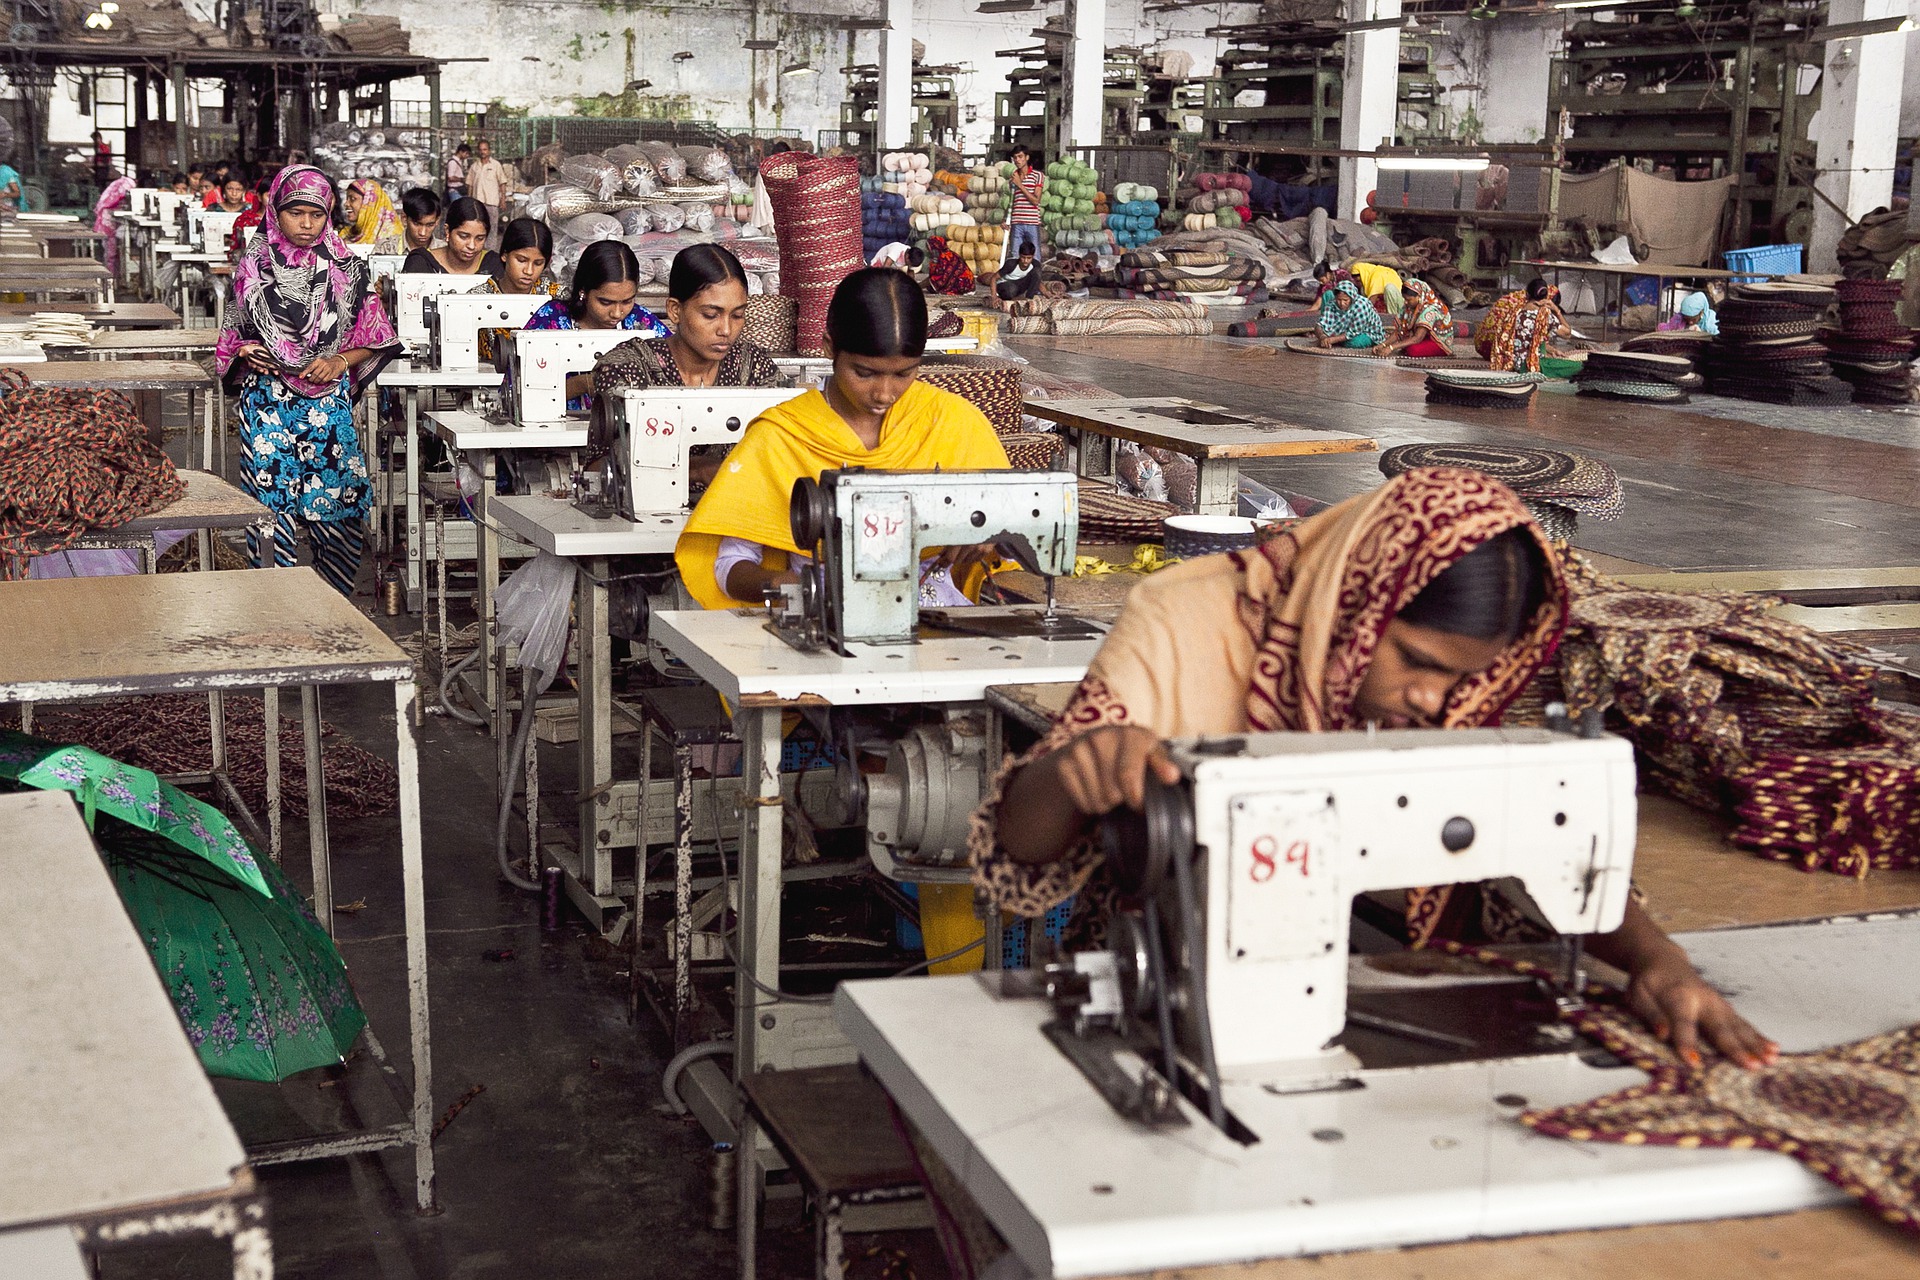 Näherinnen in Bangladesch (https://pixabay.com/de/photos/frauen-arbeitskr%c3%a4fte-n%c3%a4hen-fabrik-5973744/)